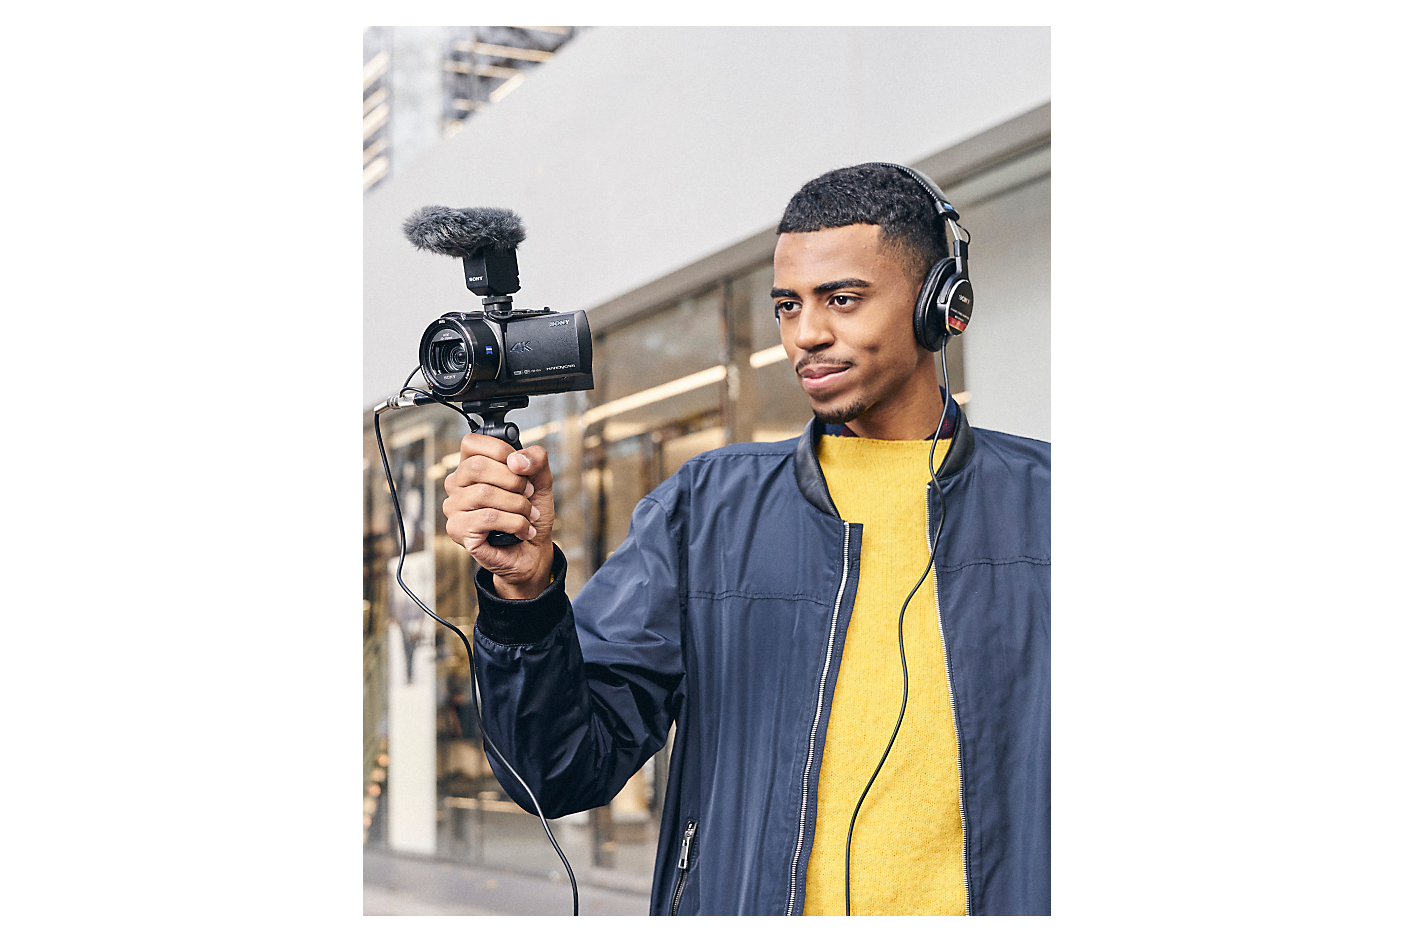 Moški s slušalkami drži Sonyjev fotoaparat s pritrjenim držalom za snemanje in mikrofonom.